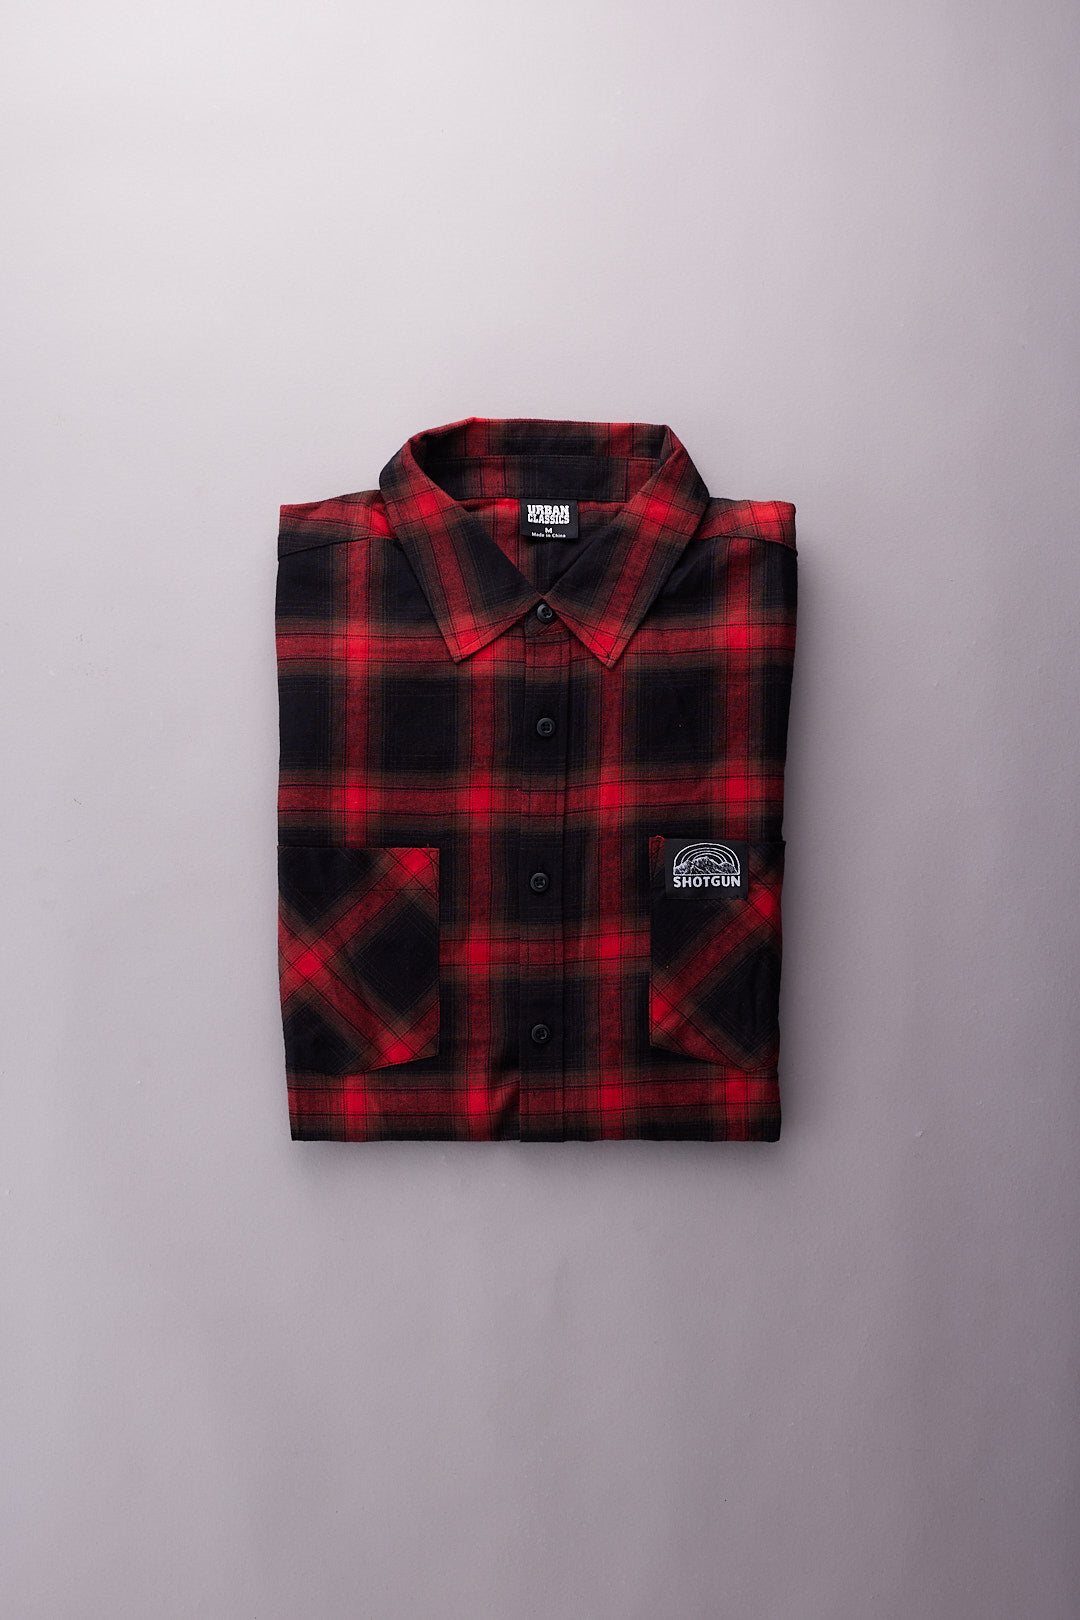 Shotgun Flannel Shirt | Lumber trunk